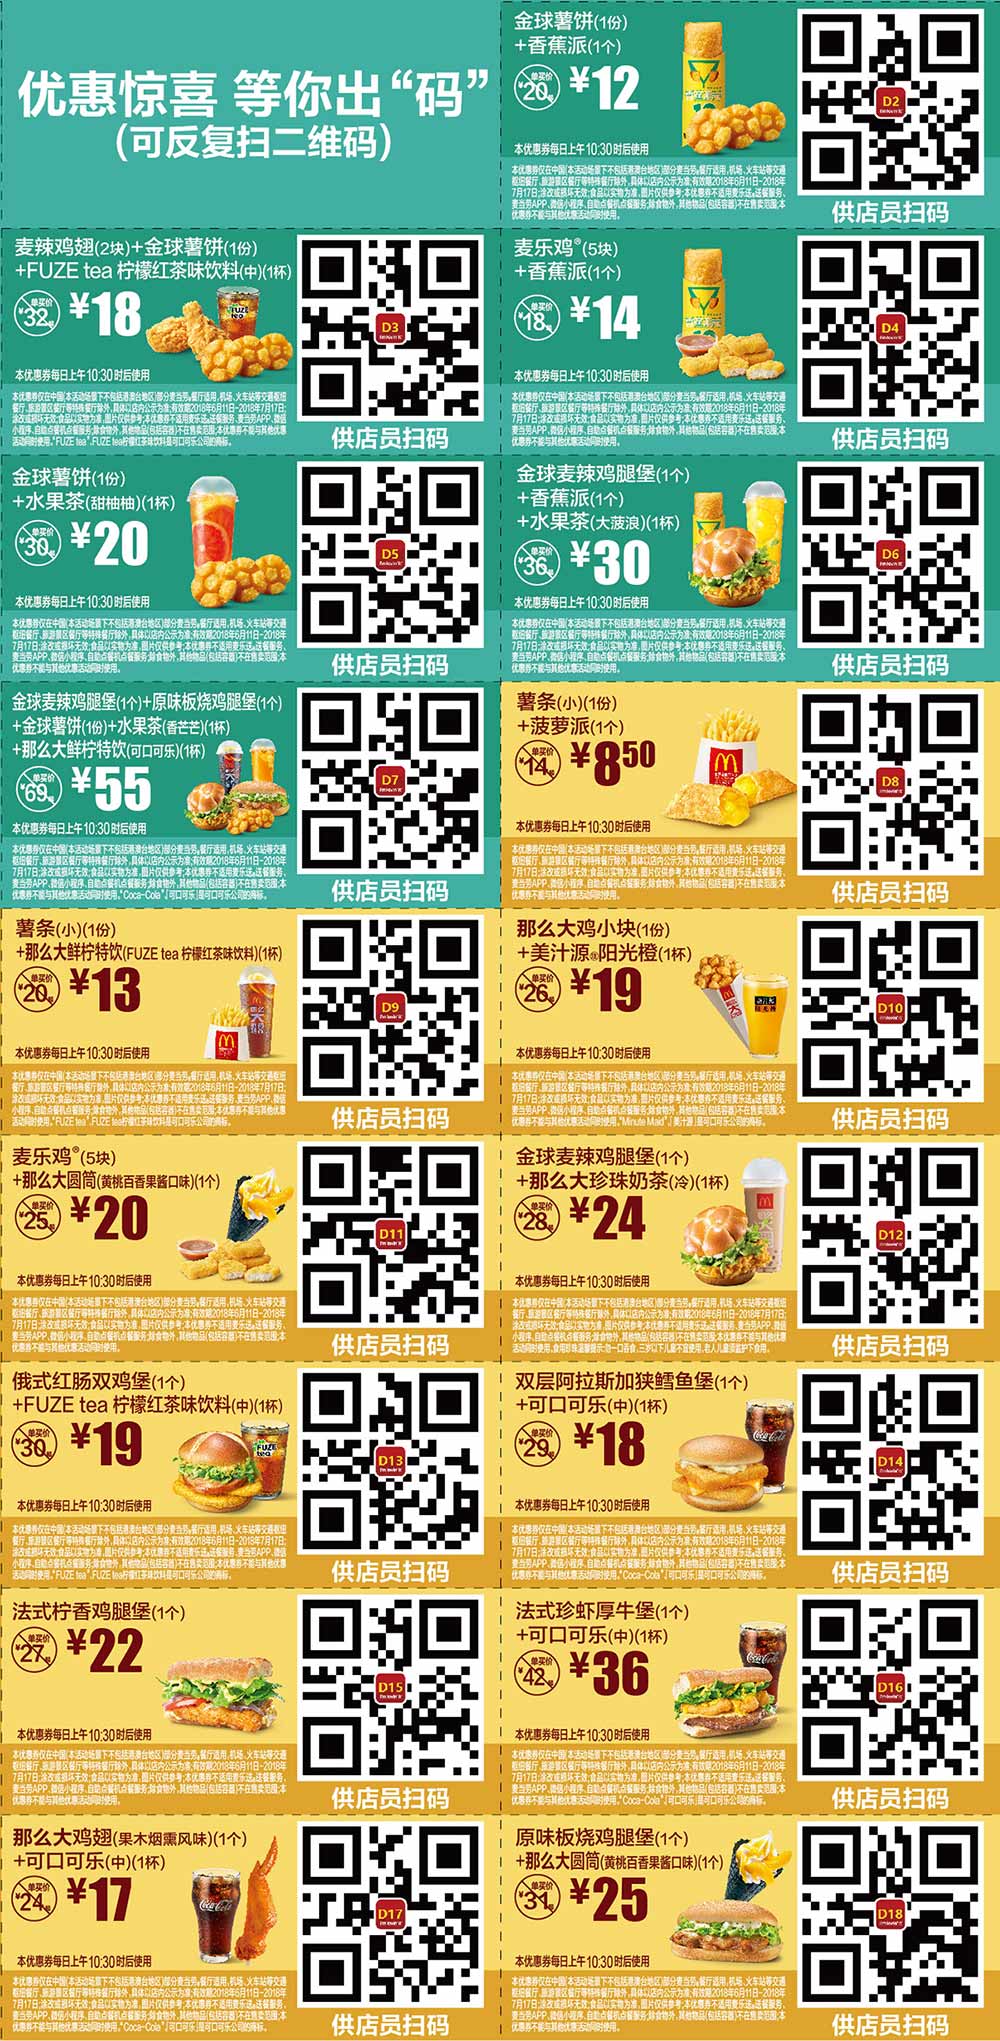 2018年6月7月份麦当劳优惠券手机版整张版本，点餐出示给店员扫码享优惠